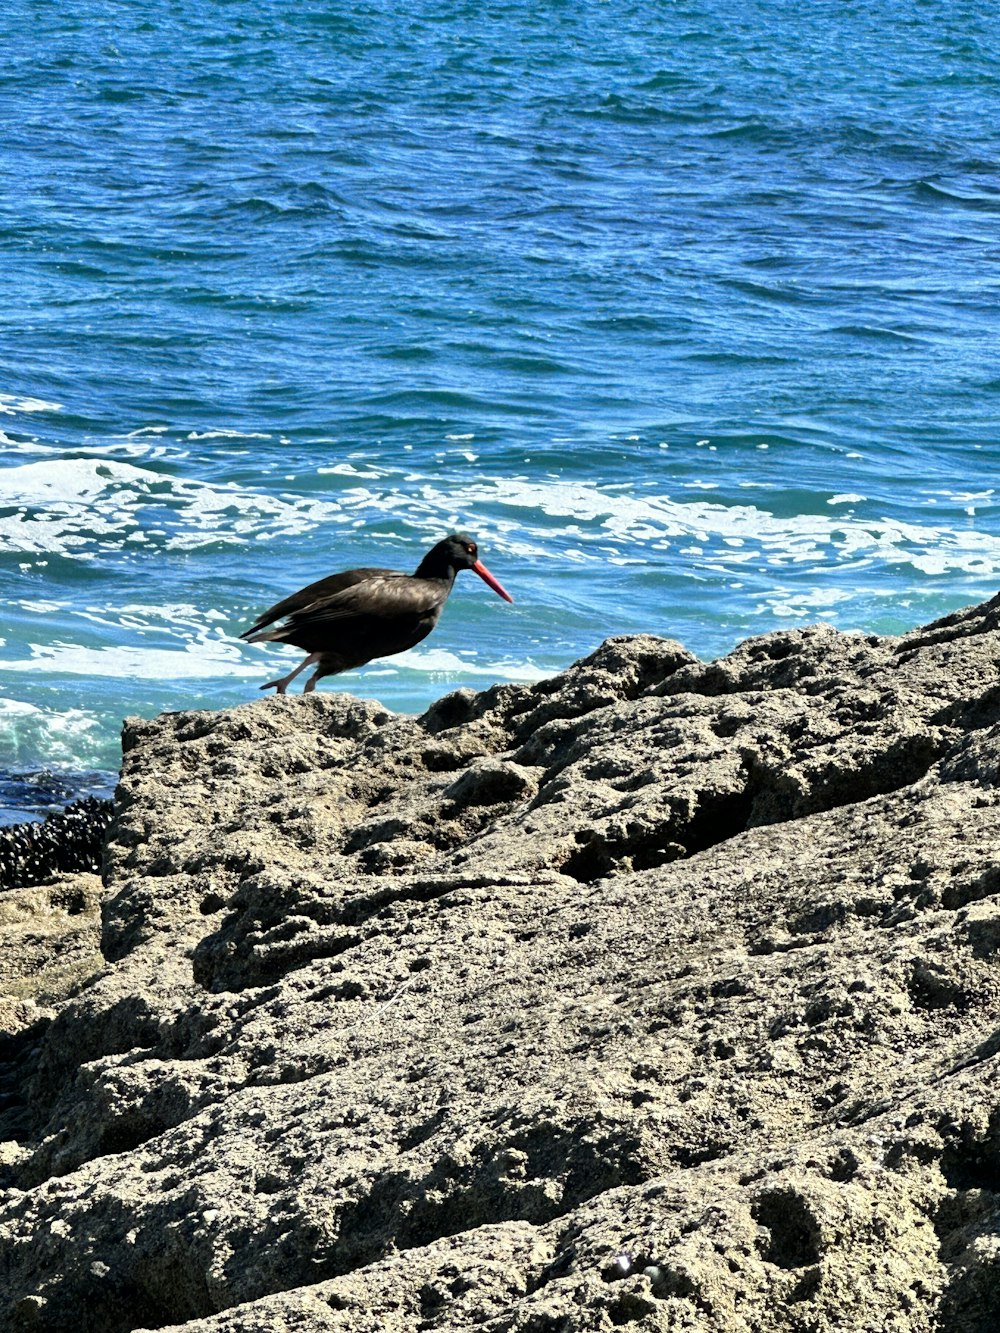 a bird standing on a rock near the ocean